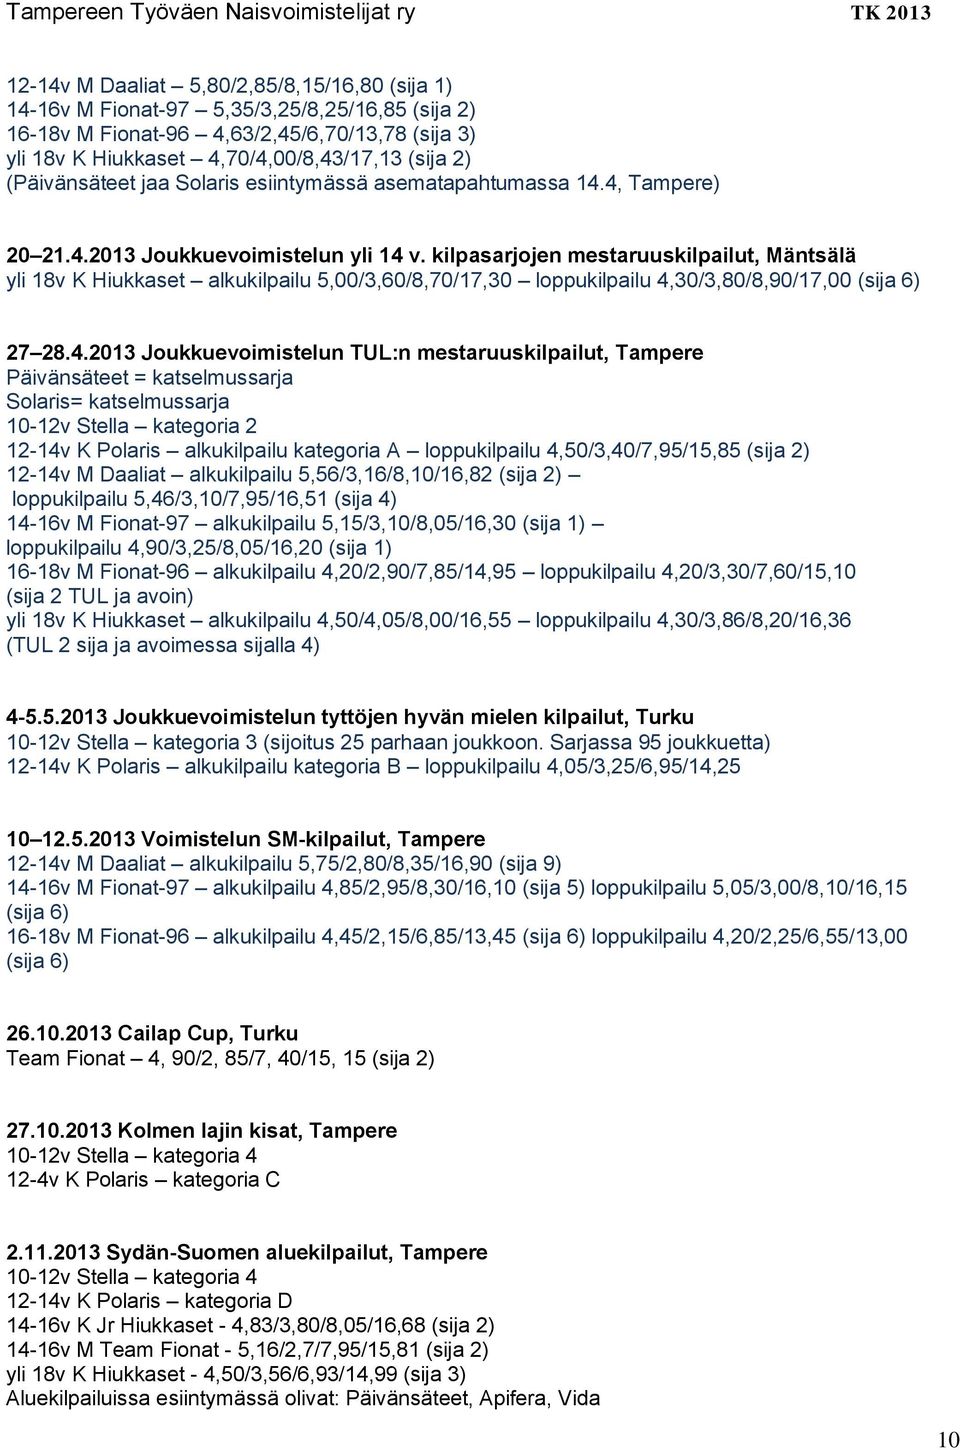 kilpasarjojen mestaruuskilpailut, Mäntsälä yli 18v K Hiukkaset alkukilpailu 5,00/3,60/8,70/17,30 loppukilpailu 4,